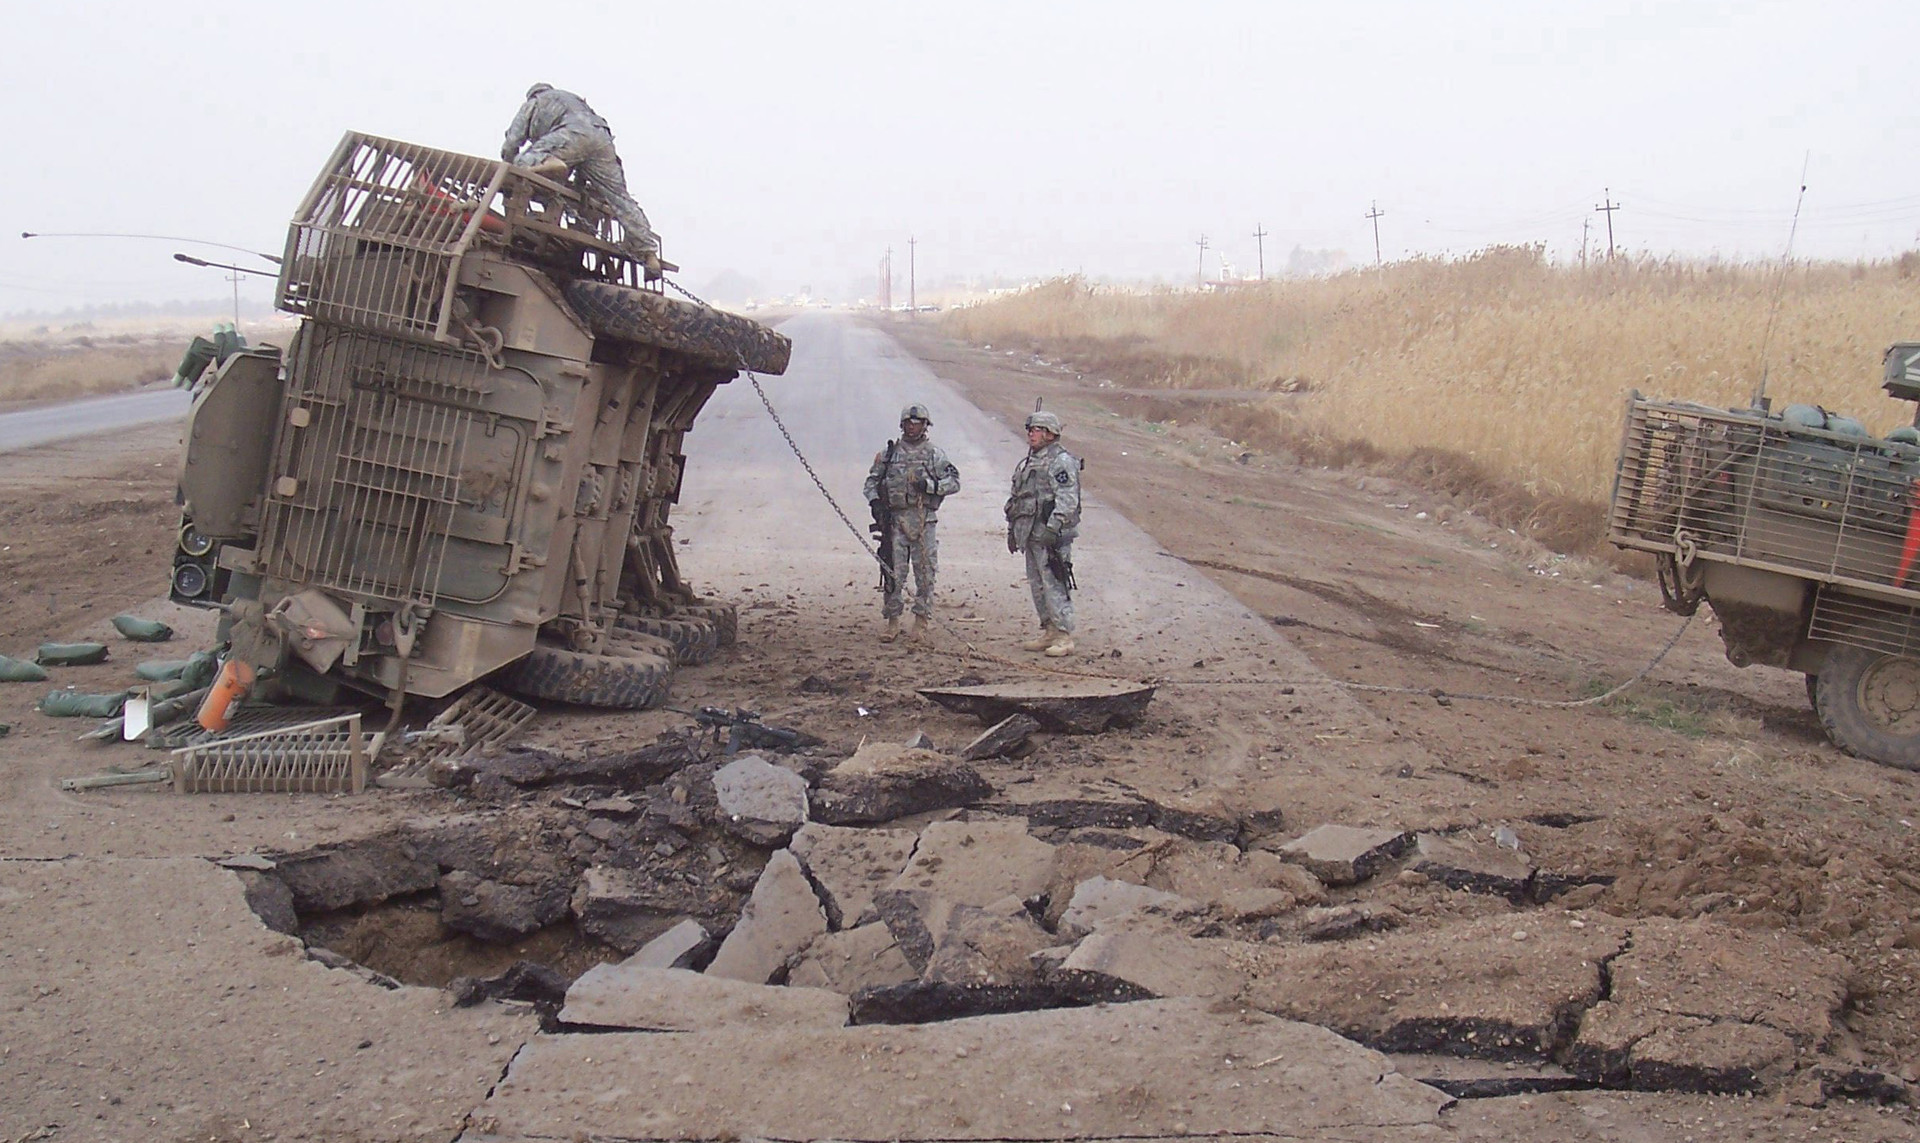 Prevrnuti Stryker nakon što je naletio na improvizirano eksplozivno sredstvo, Irak 2007. godine